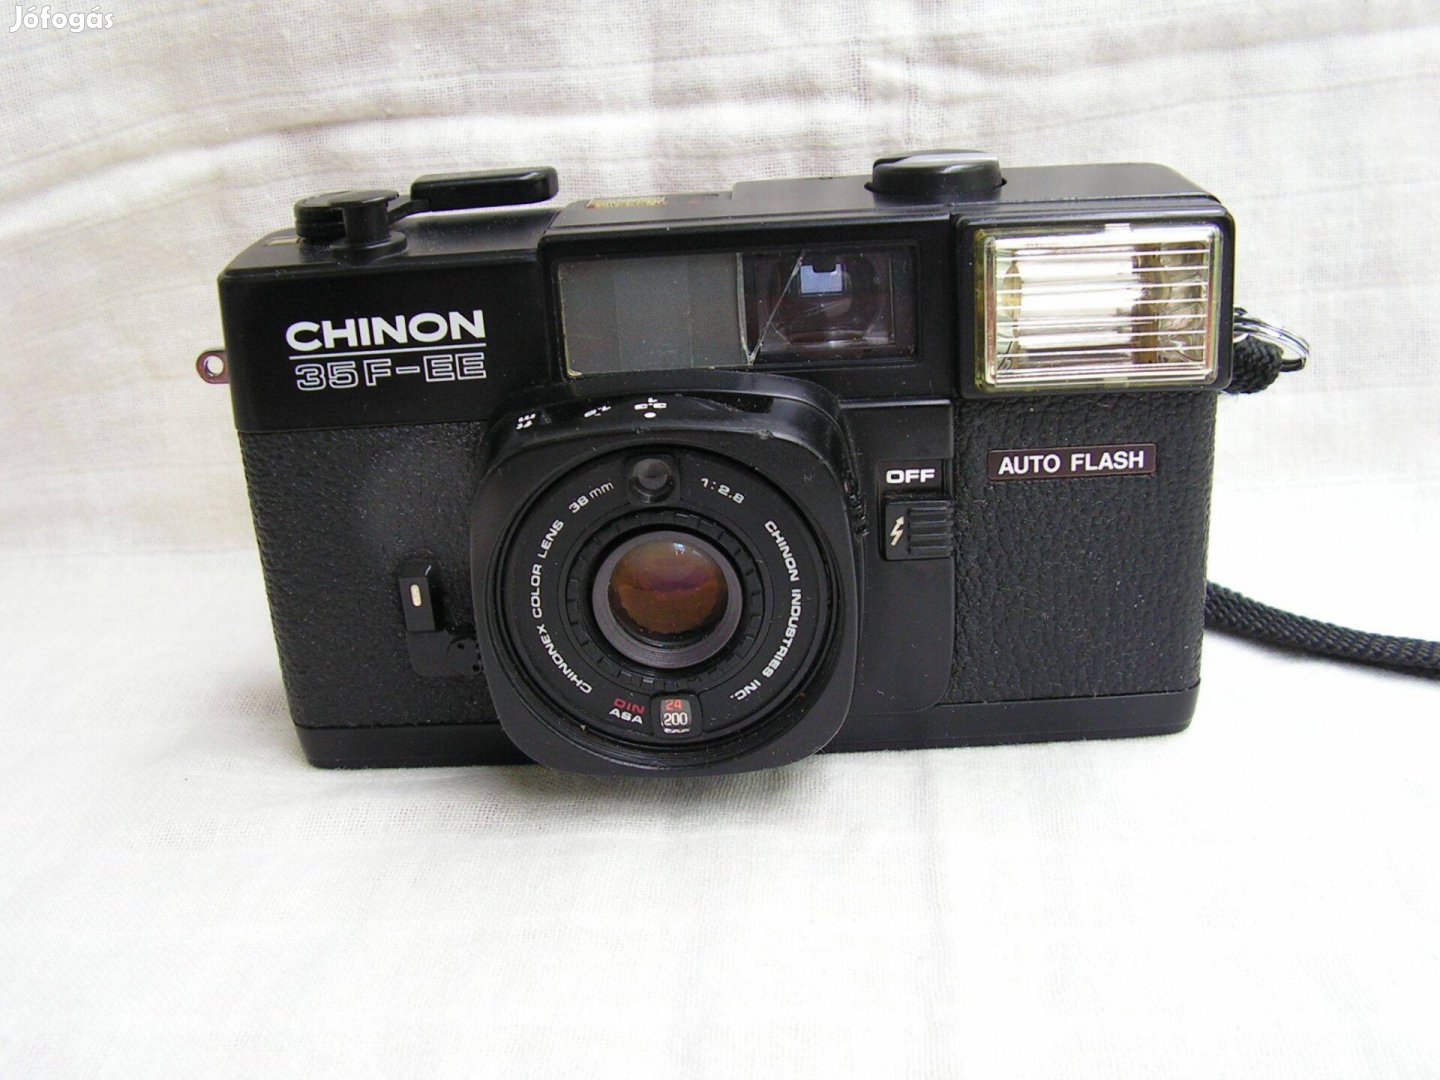 Chinon 35 F - EE Filmes fényképezőgép